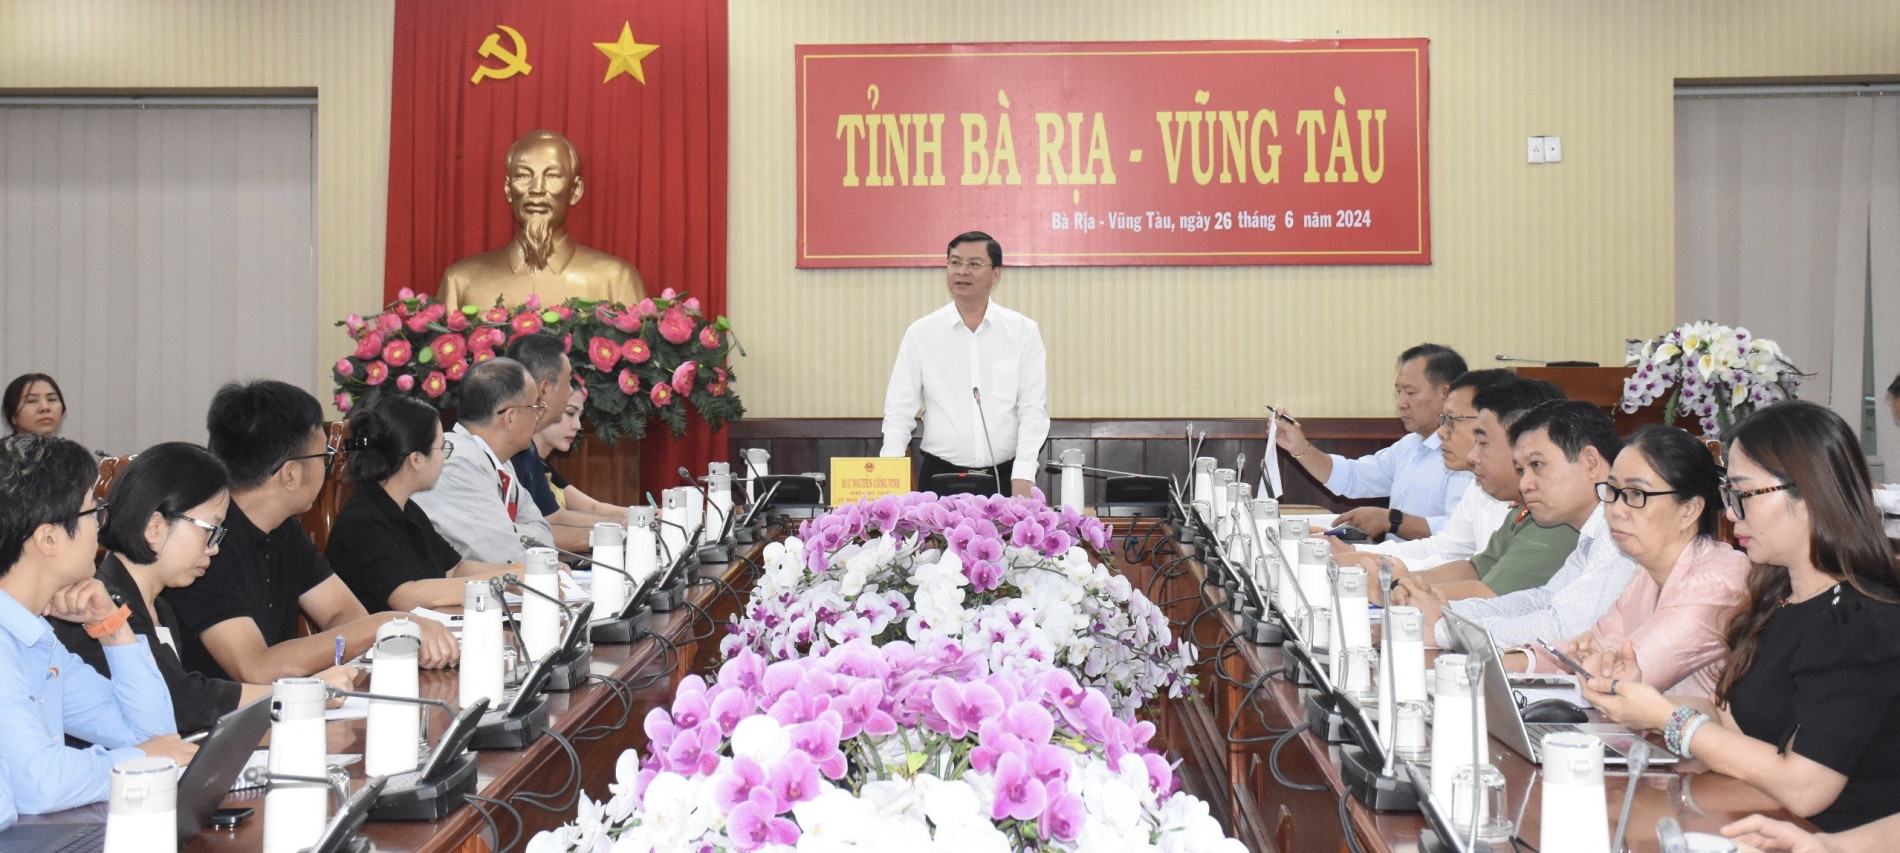 Ông Nguyễn Công Vinh, Phó Chủ tịch UBND tỉnh chủ trì cuộc họp